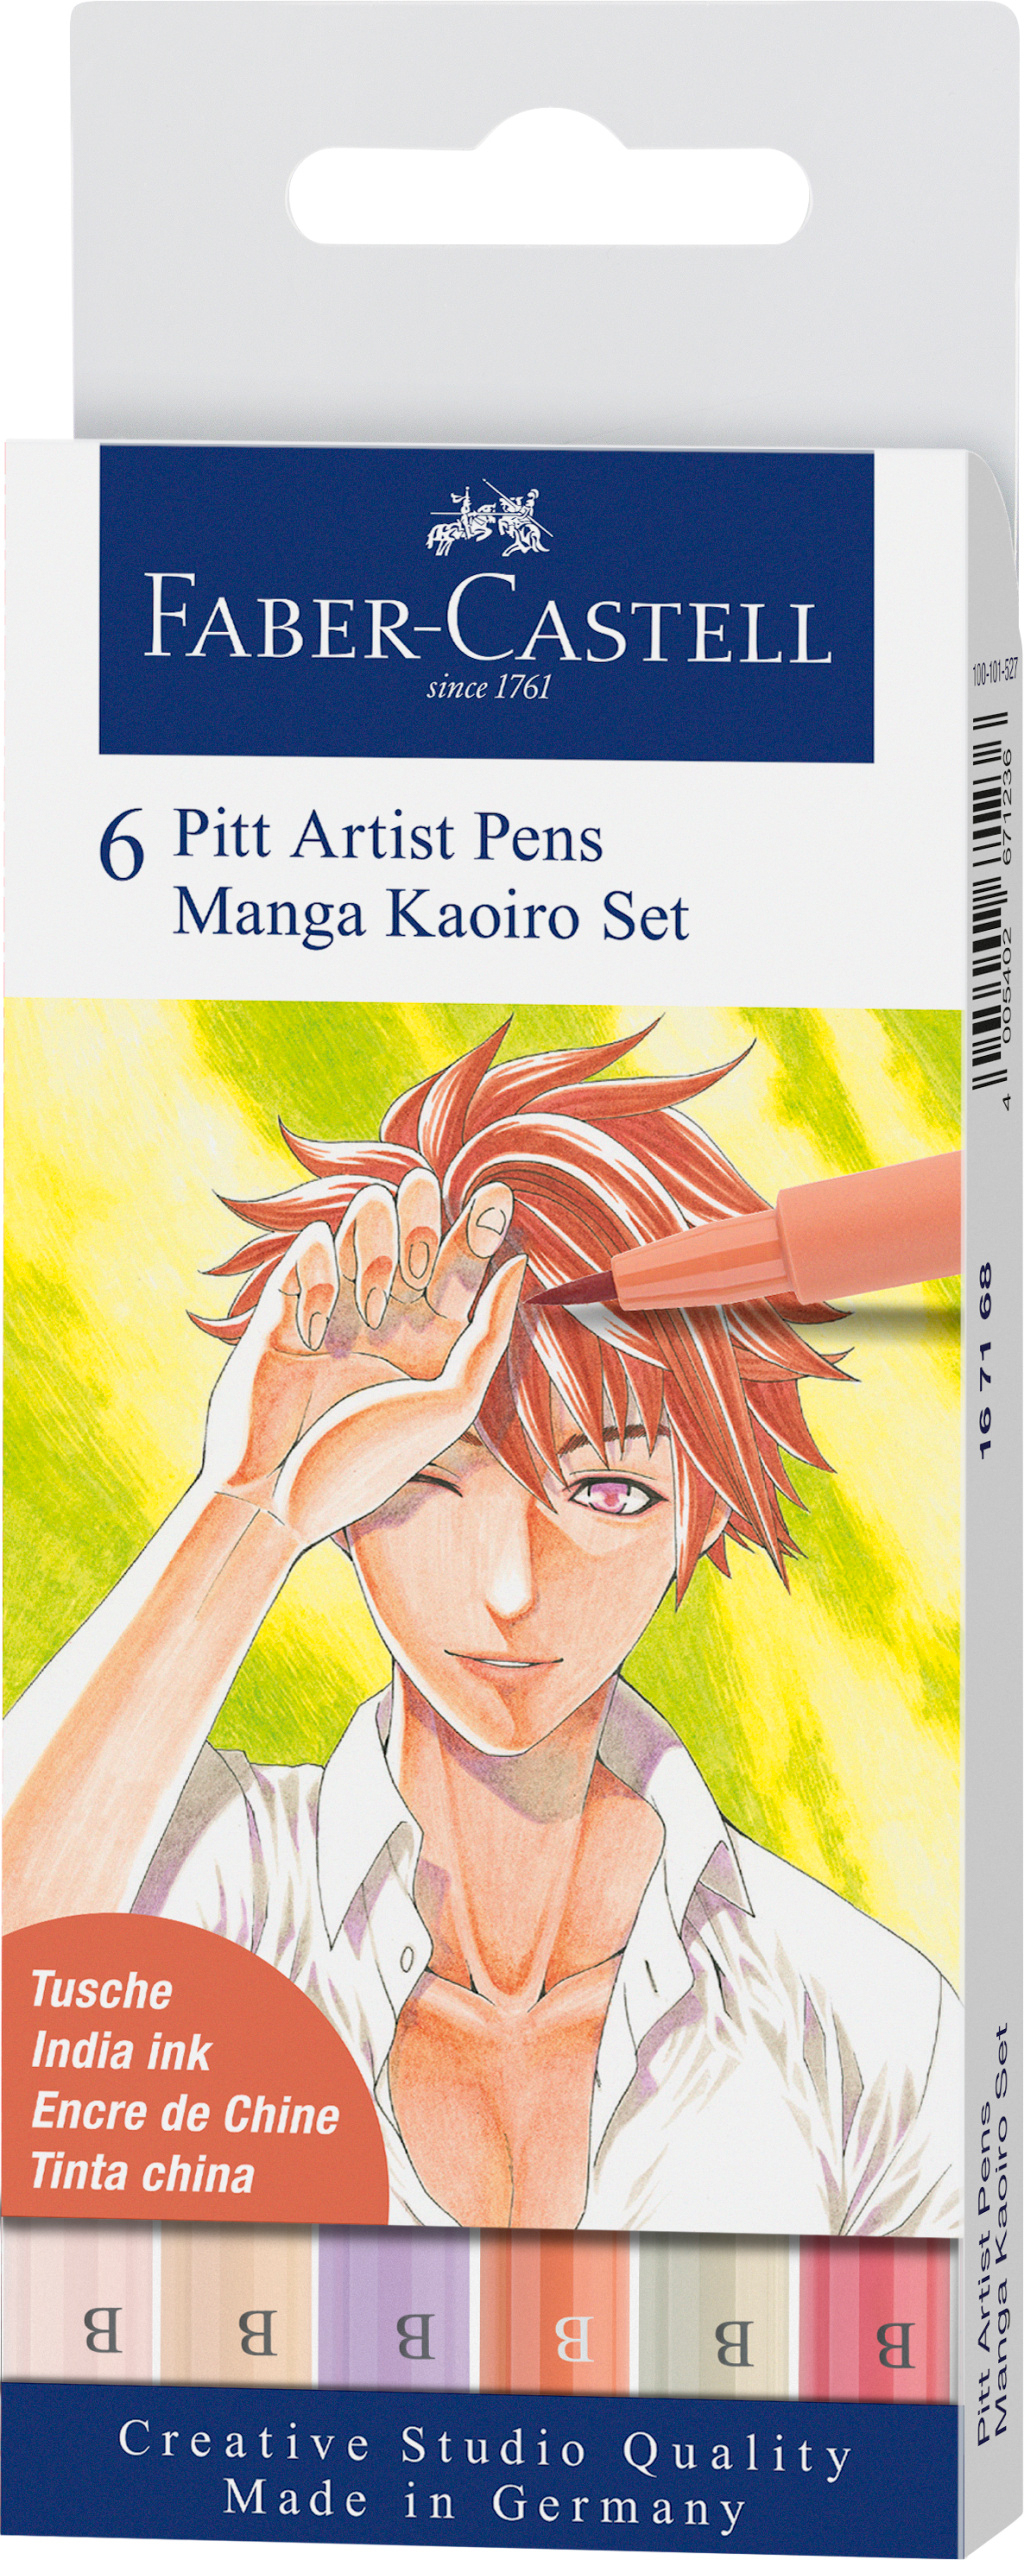 FABER-CASTELL Pitt Artist Pen Manga Kaoiro 167168 couleurs 6 pcs.